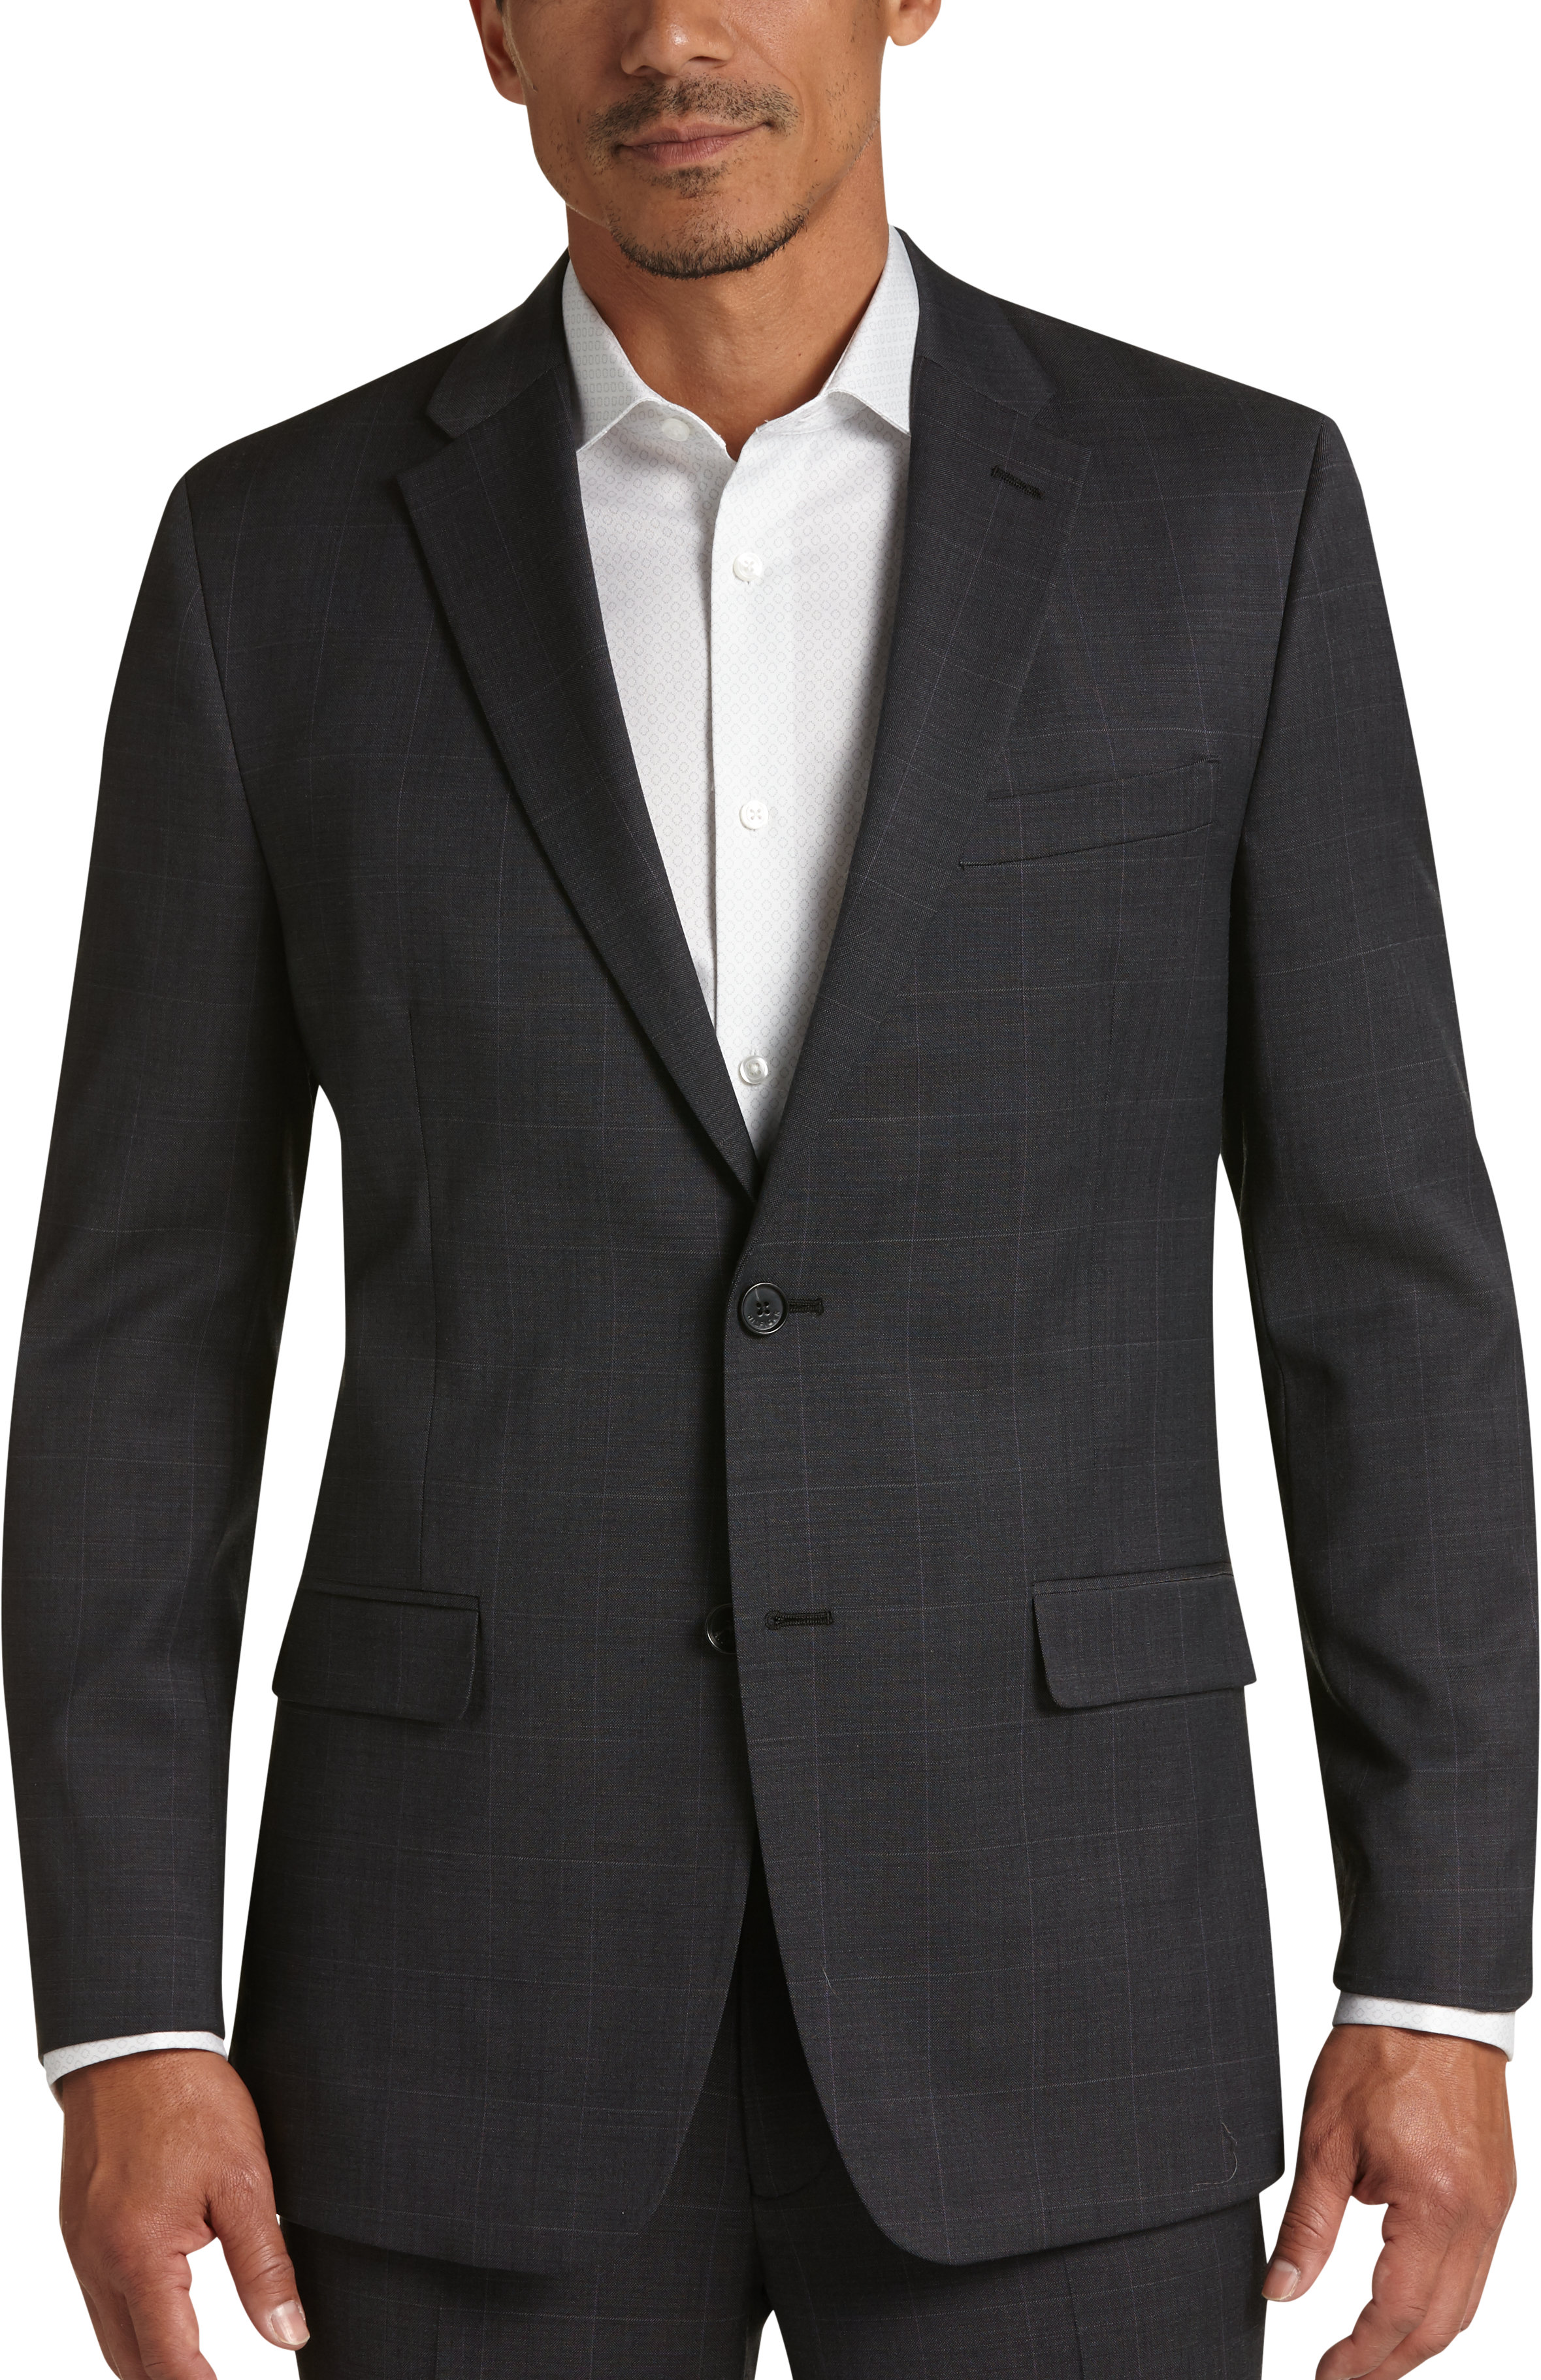 Tommy Hilfiger Charcoal Windowpane Plaid Slim Fit Suit - Men's Slim Fit ...